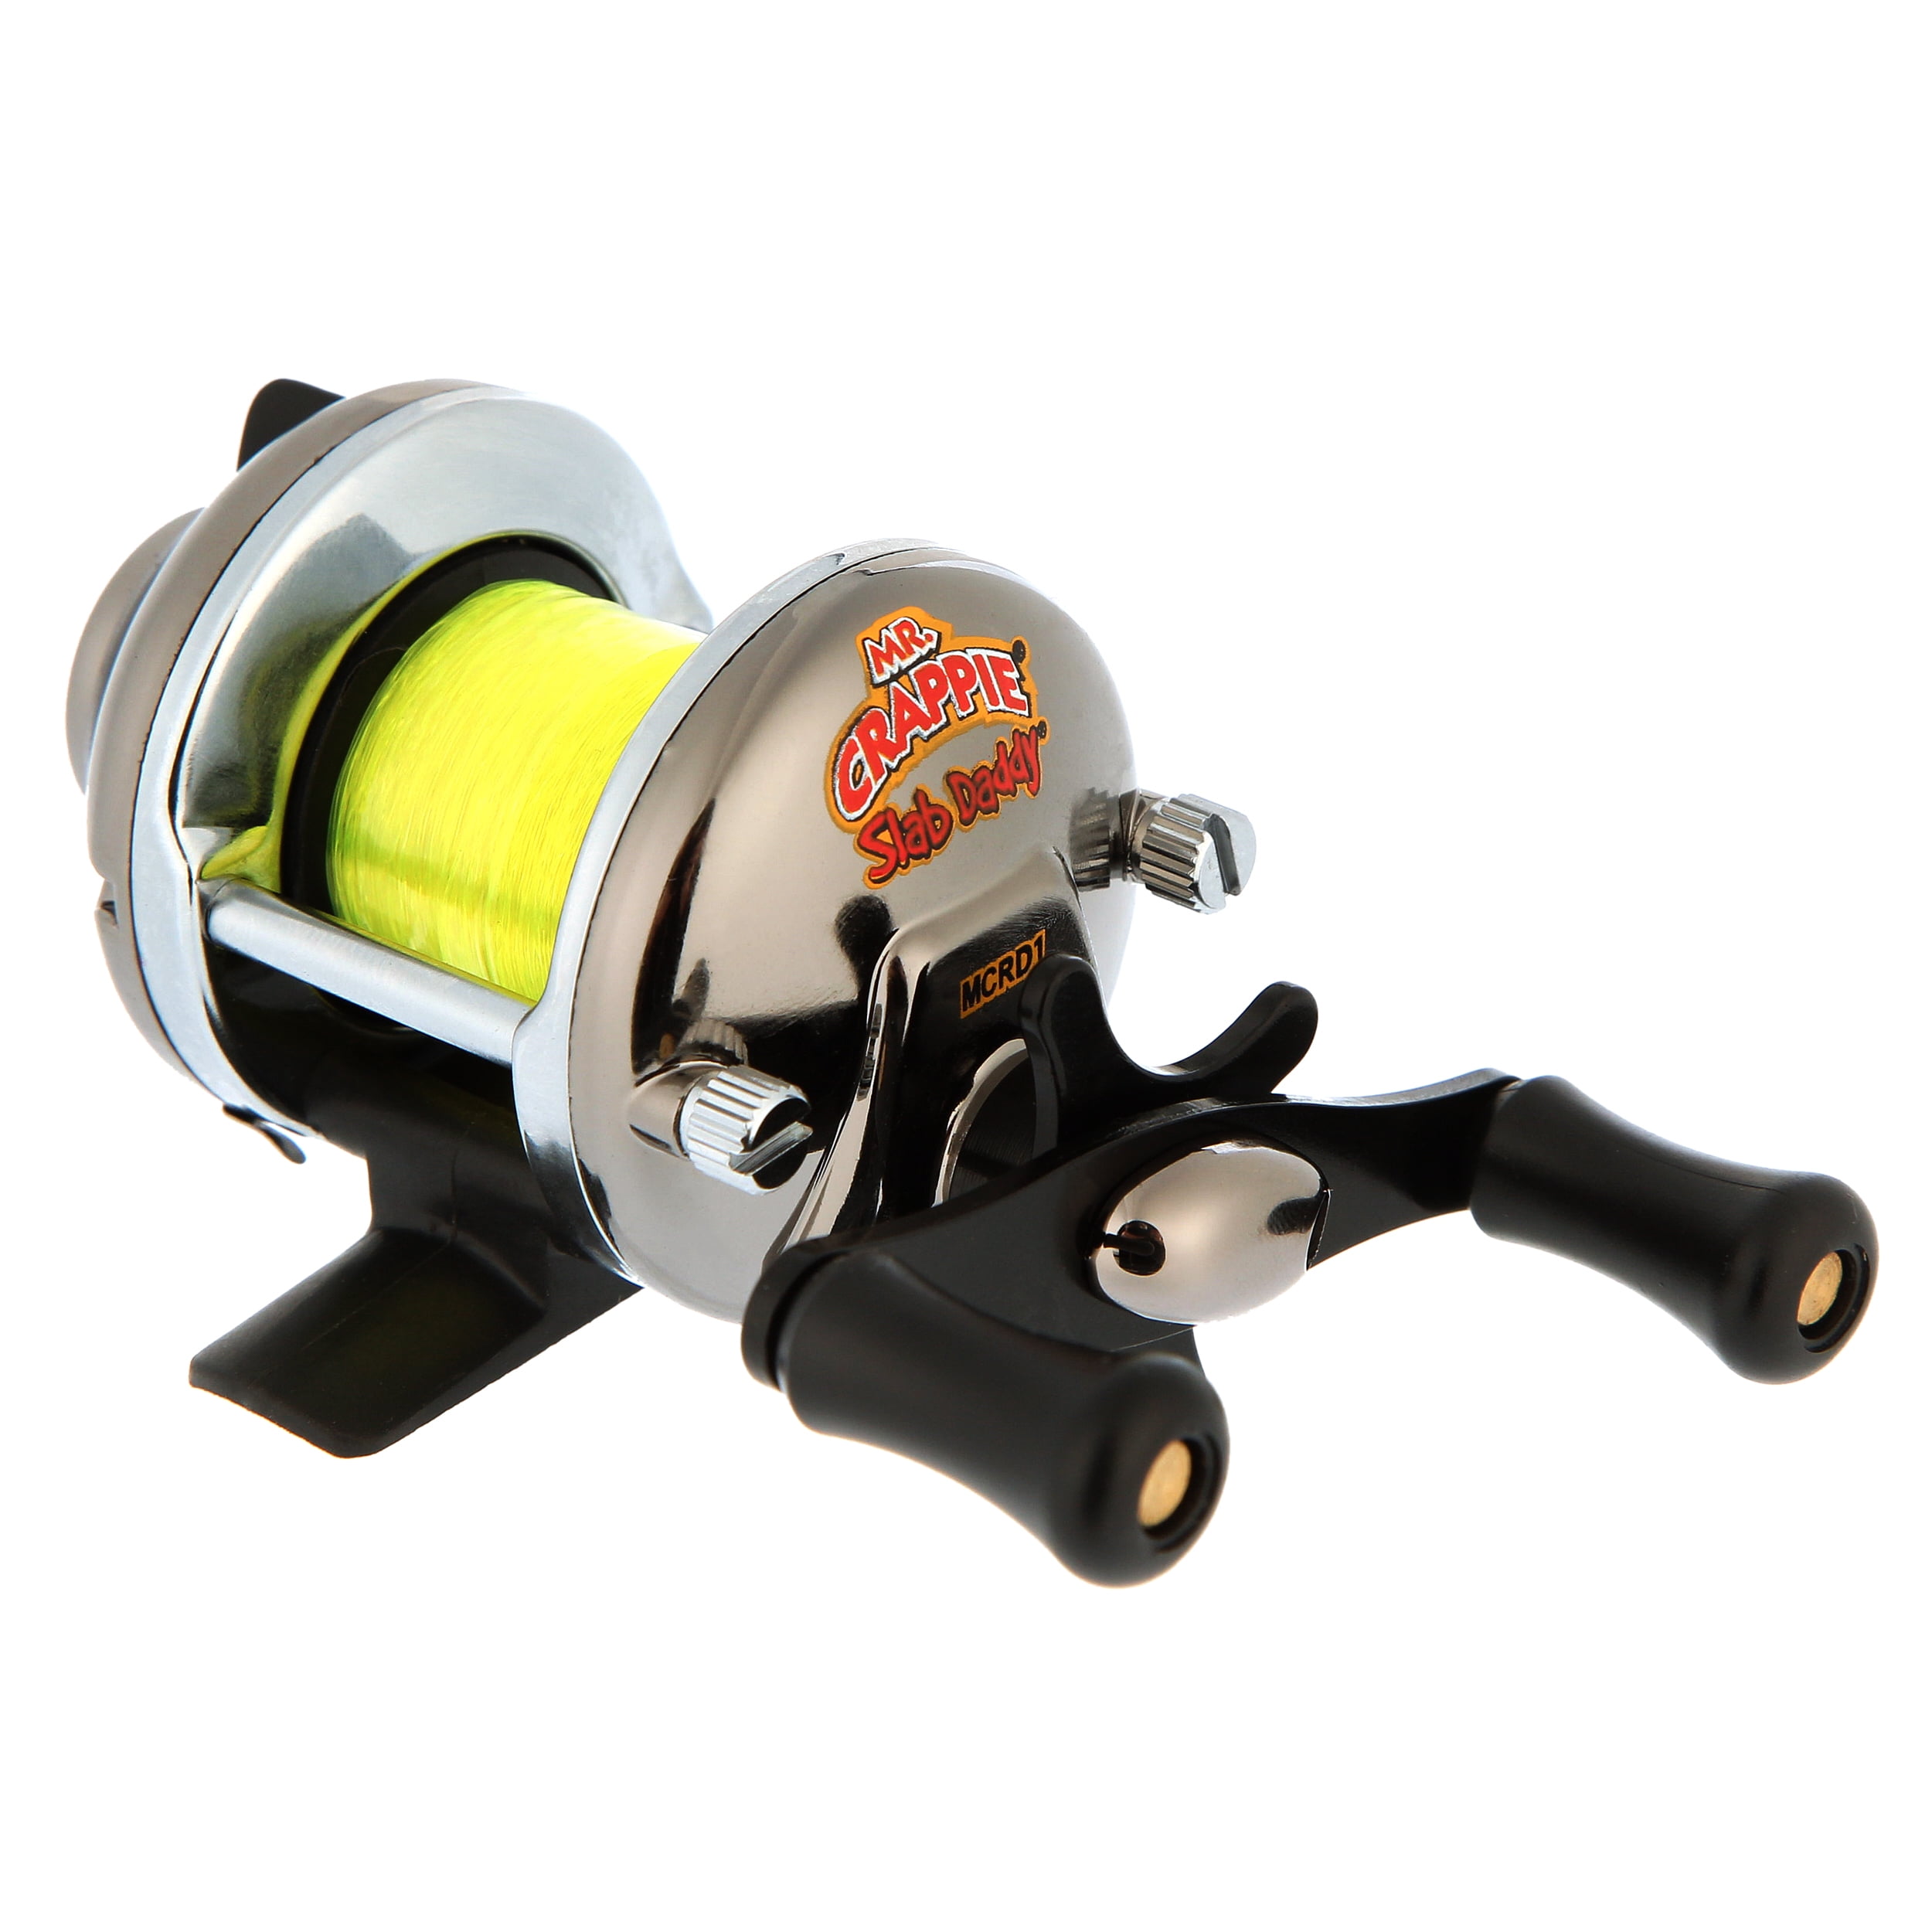 SD1,Mr Crappie Slab Shaker Reel (BLISTER) for Fishing